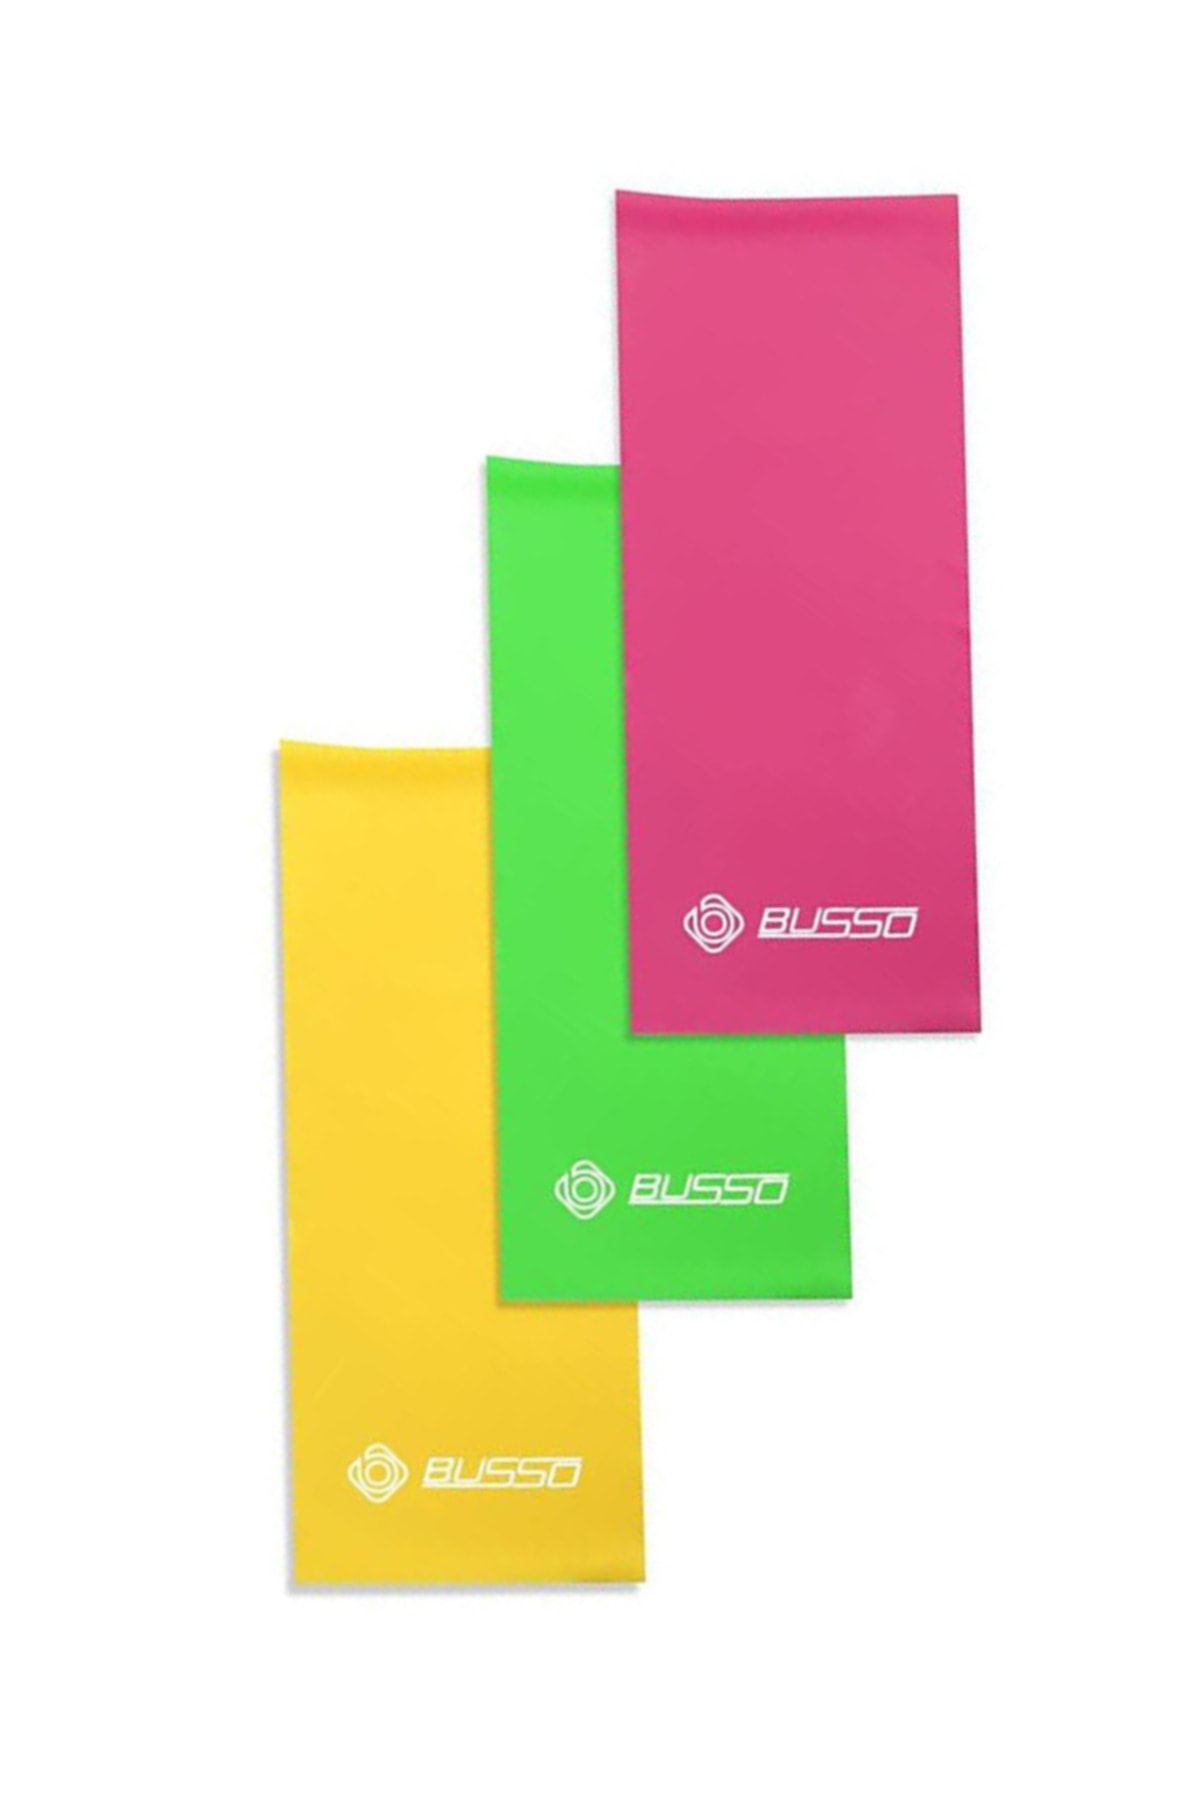 Busso Bls-45 3'lü Pilates Lastiği 90 Cm*7,5 Cm